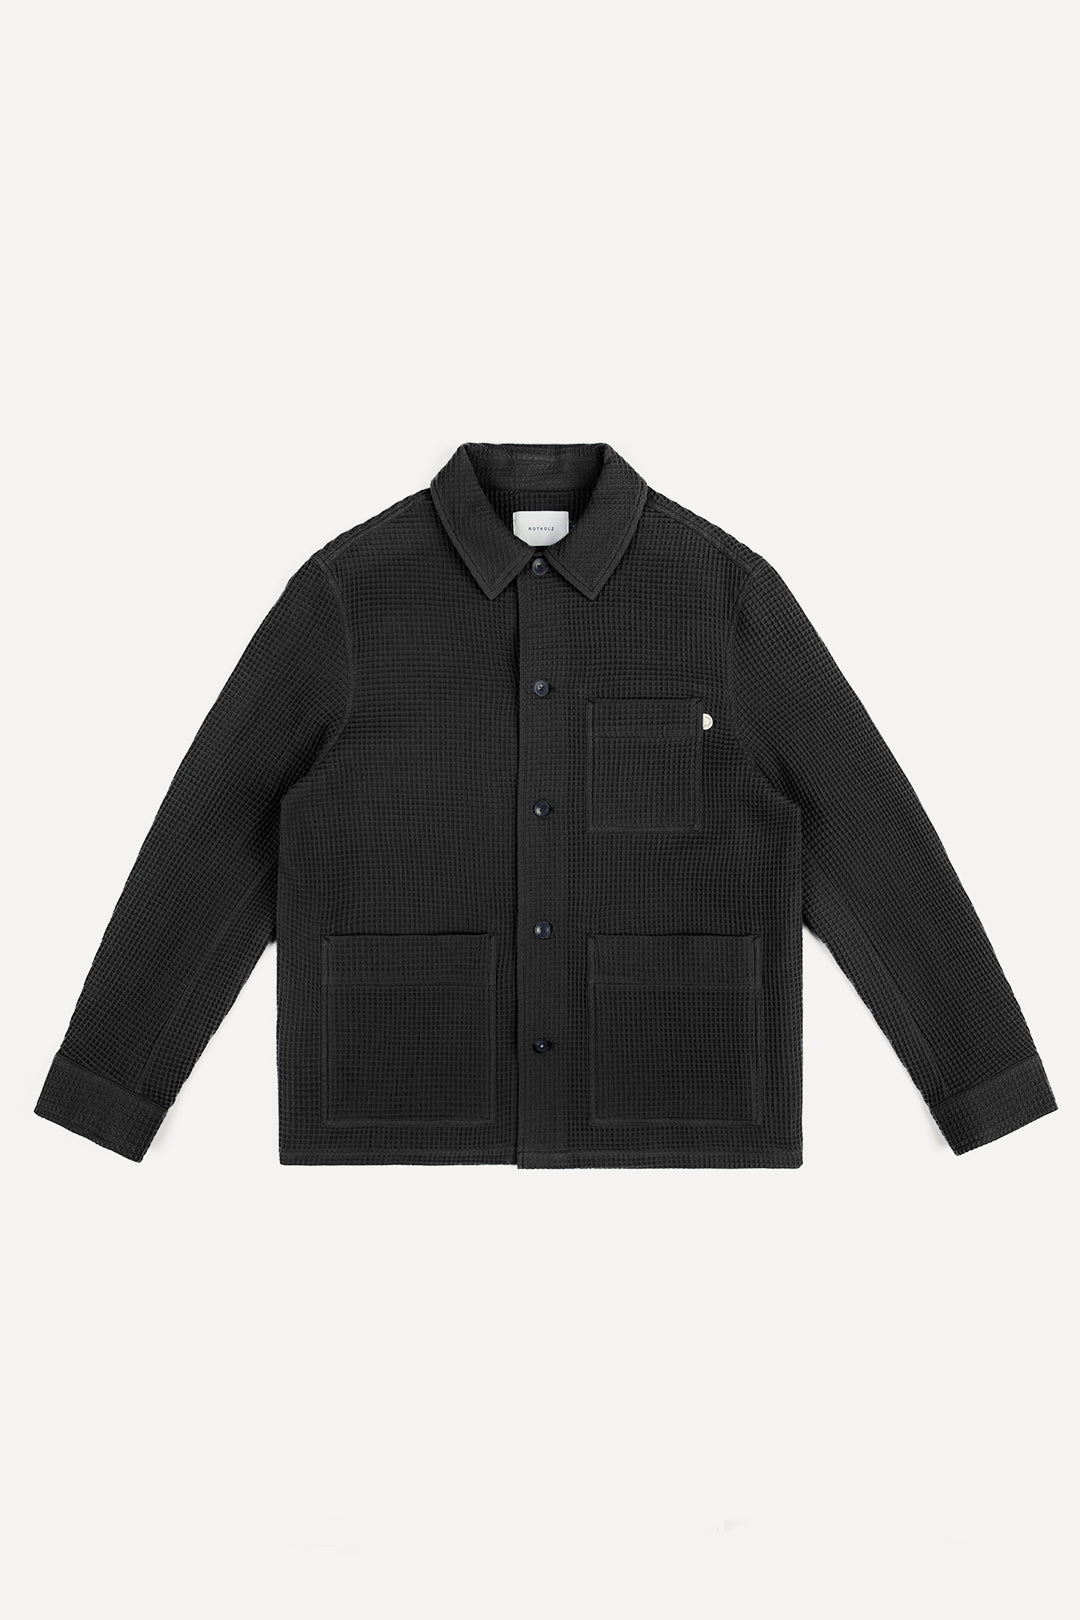 Schwarze Jacke Workwear Waffle aus 100% Bio-Baumwolle von Rotholz